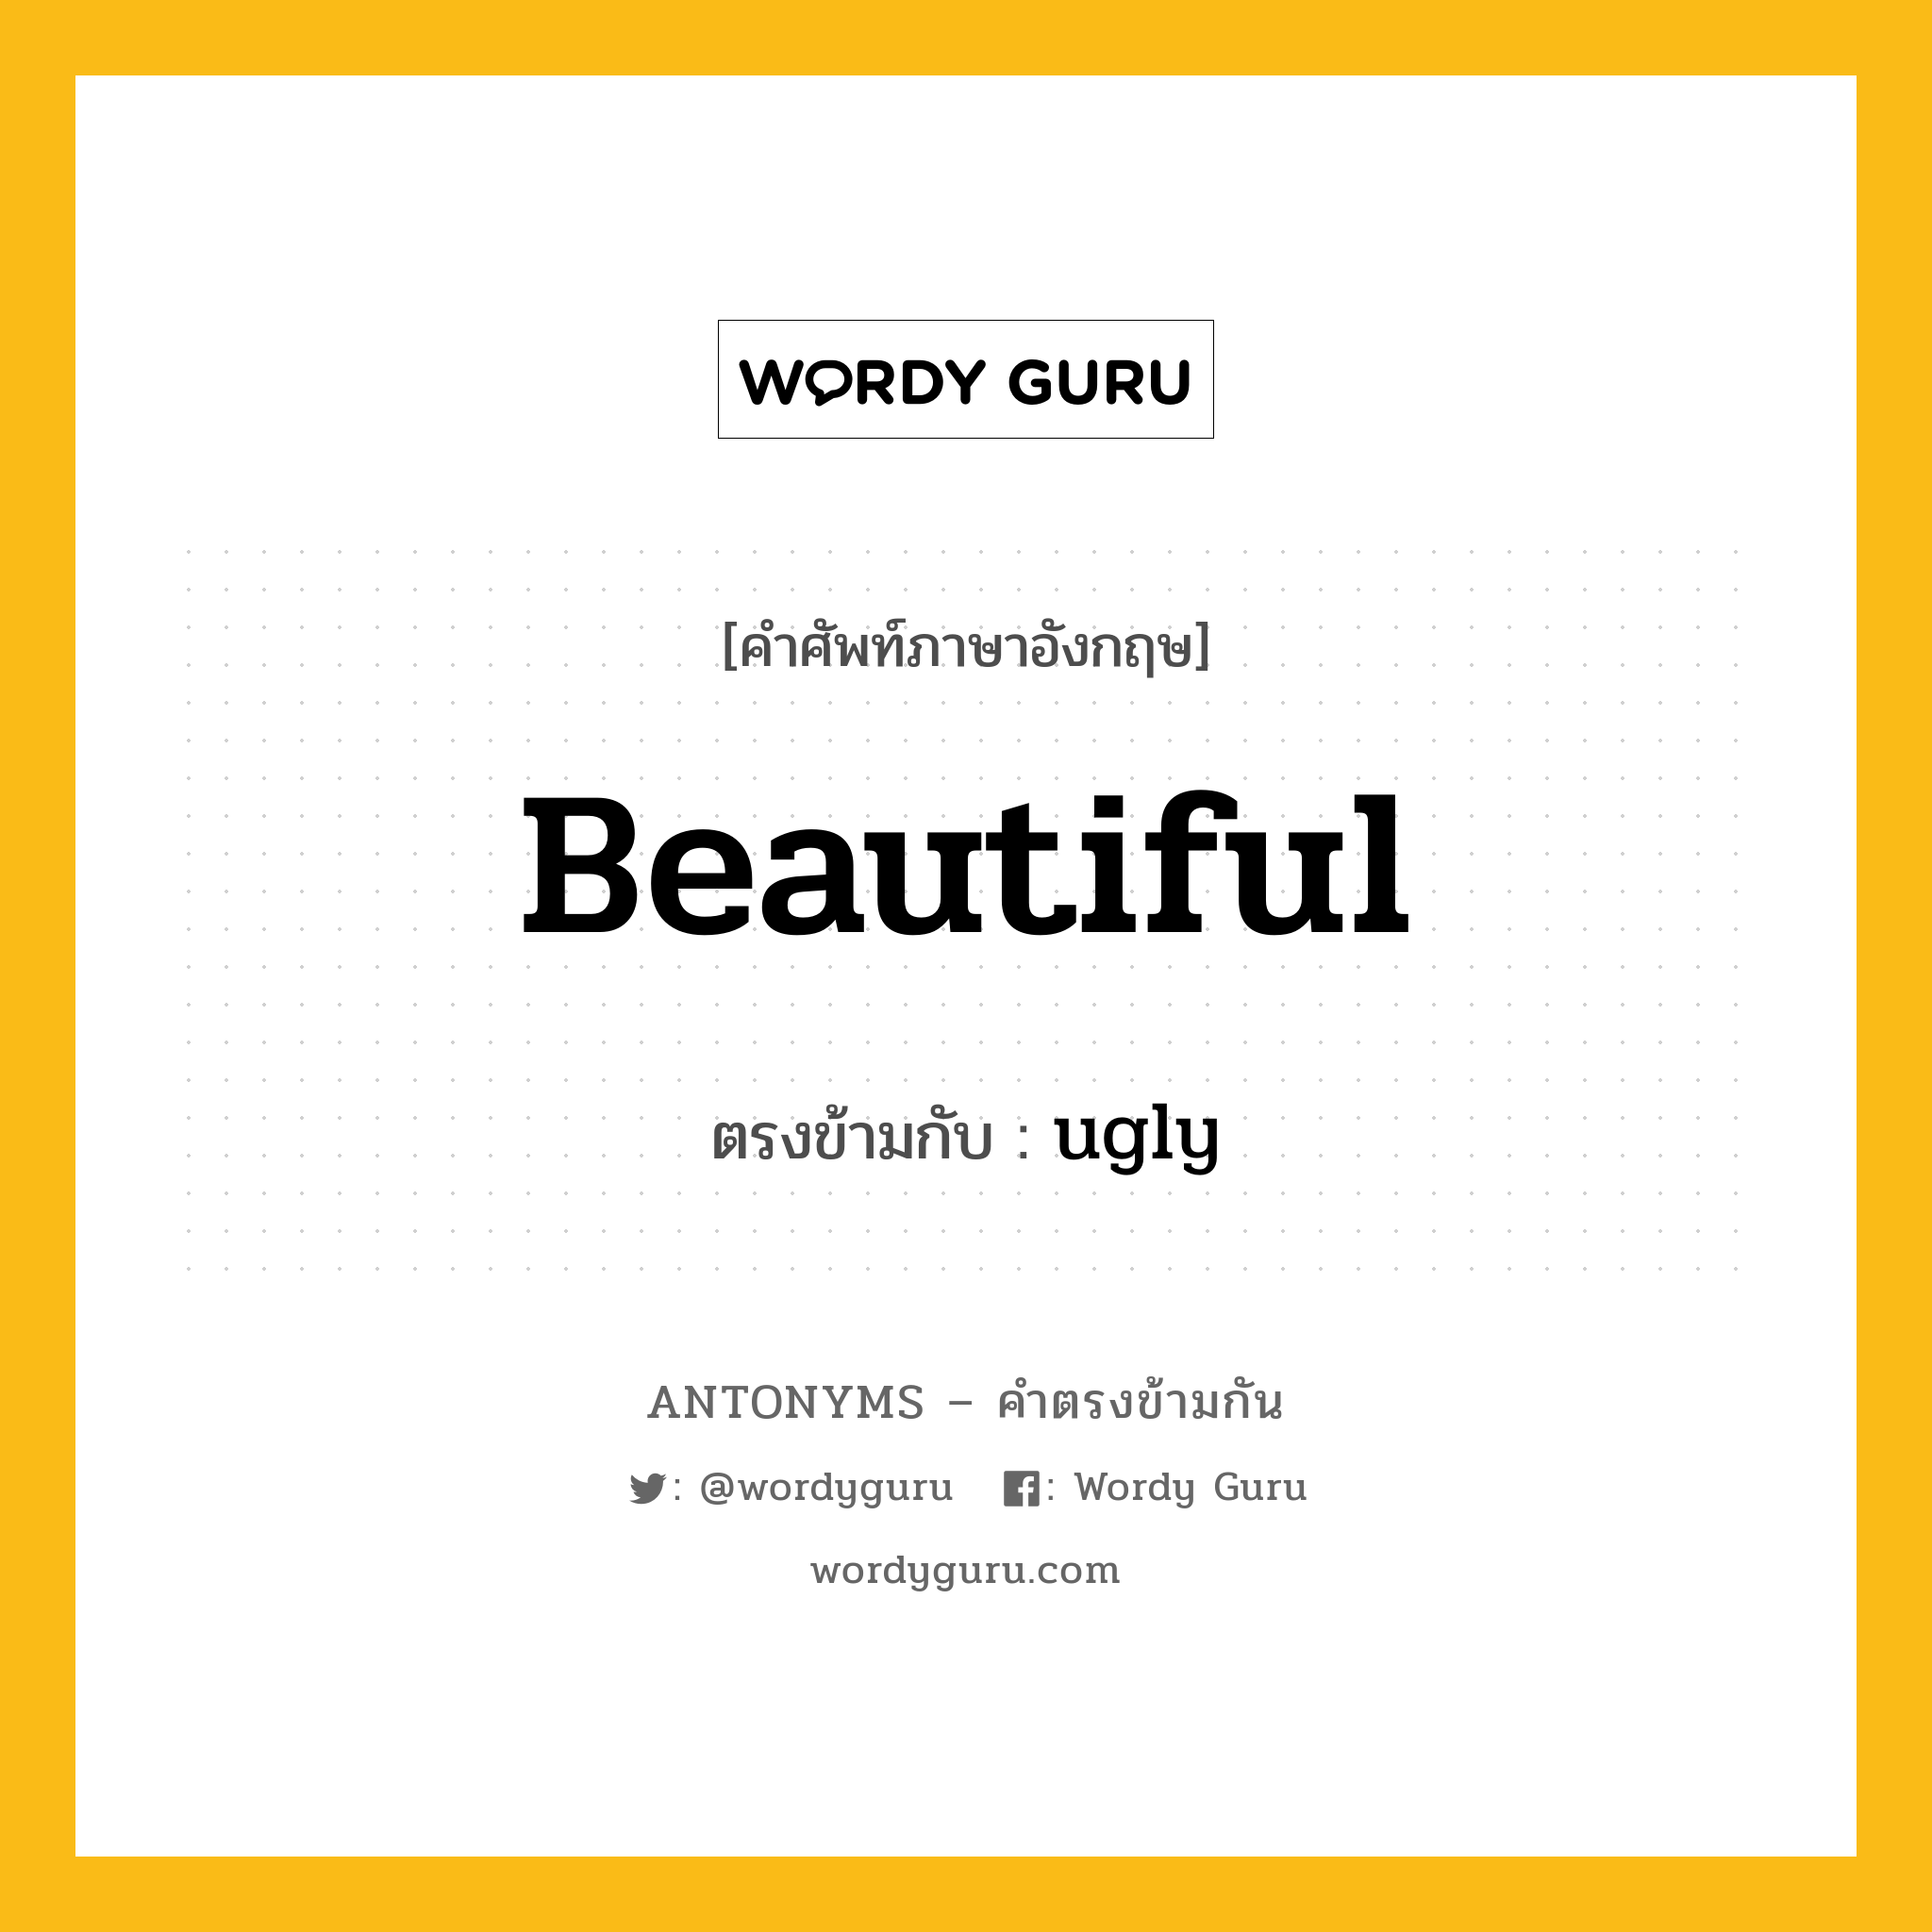 beautiful เป็นคำตรงข้ามกับคำไหนบ้าง?, คำศัพท์ภาษาอังกฤษ beautiful ตรงข้ามกับ ugly หมวด ugly